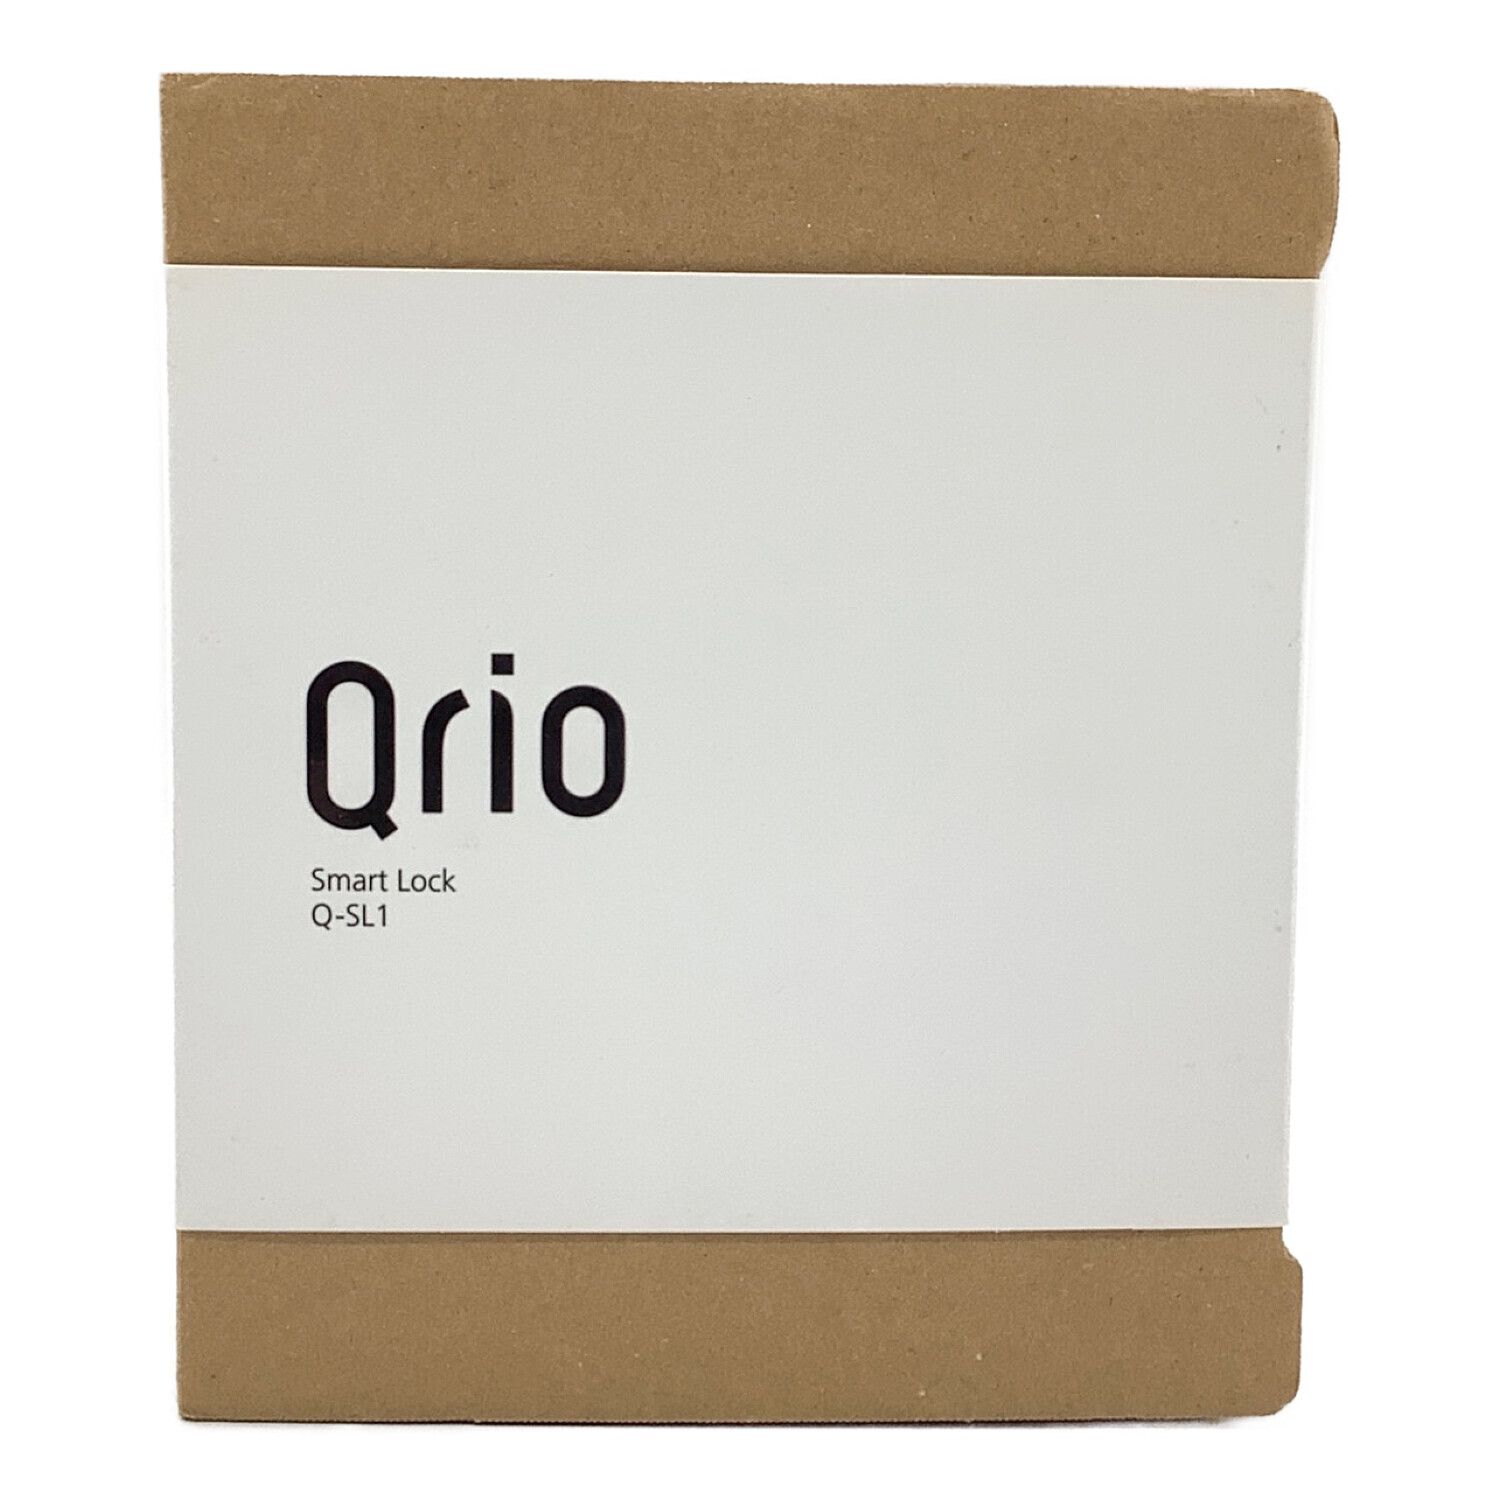 Qrio Smart Lock Q-SL1 品